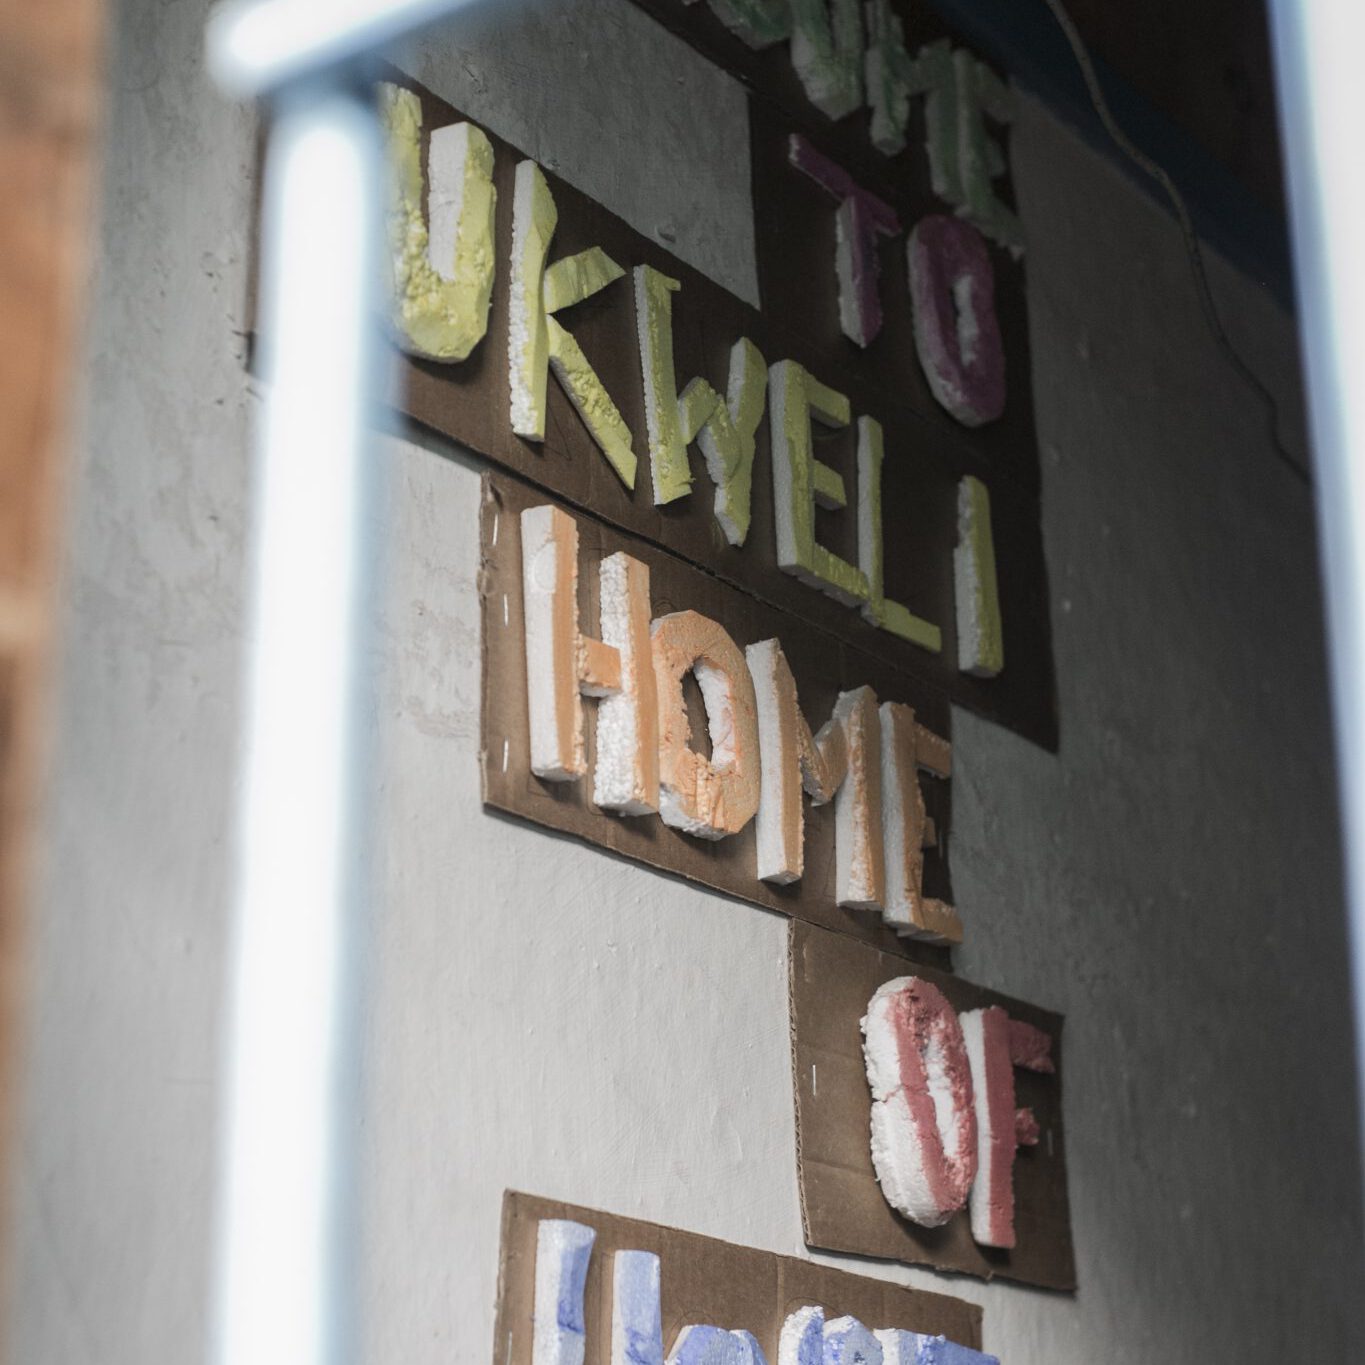 Ukweli Home of Hope